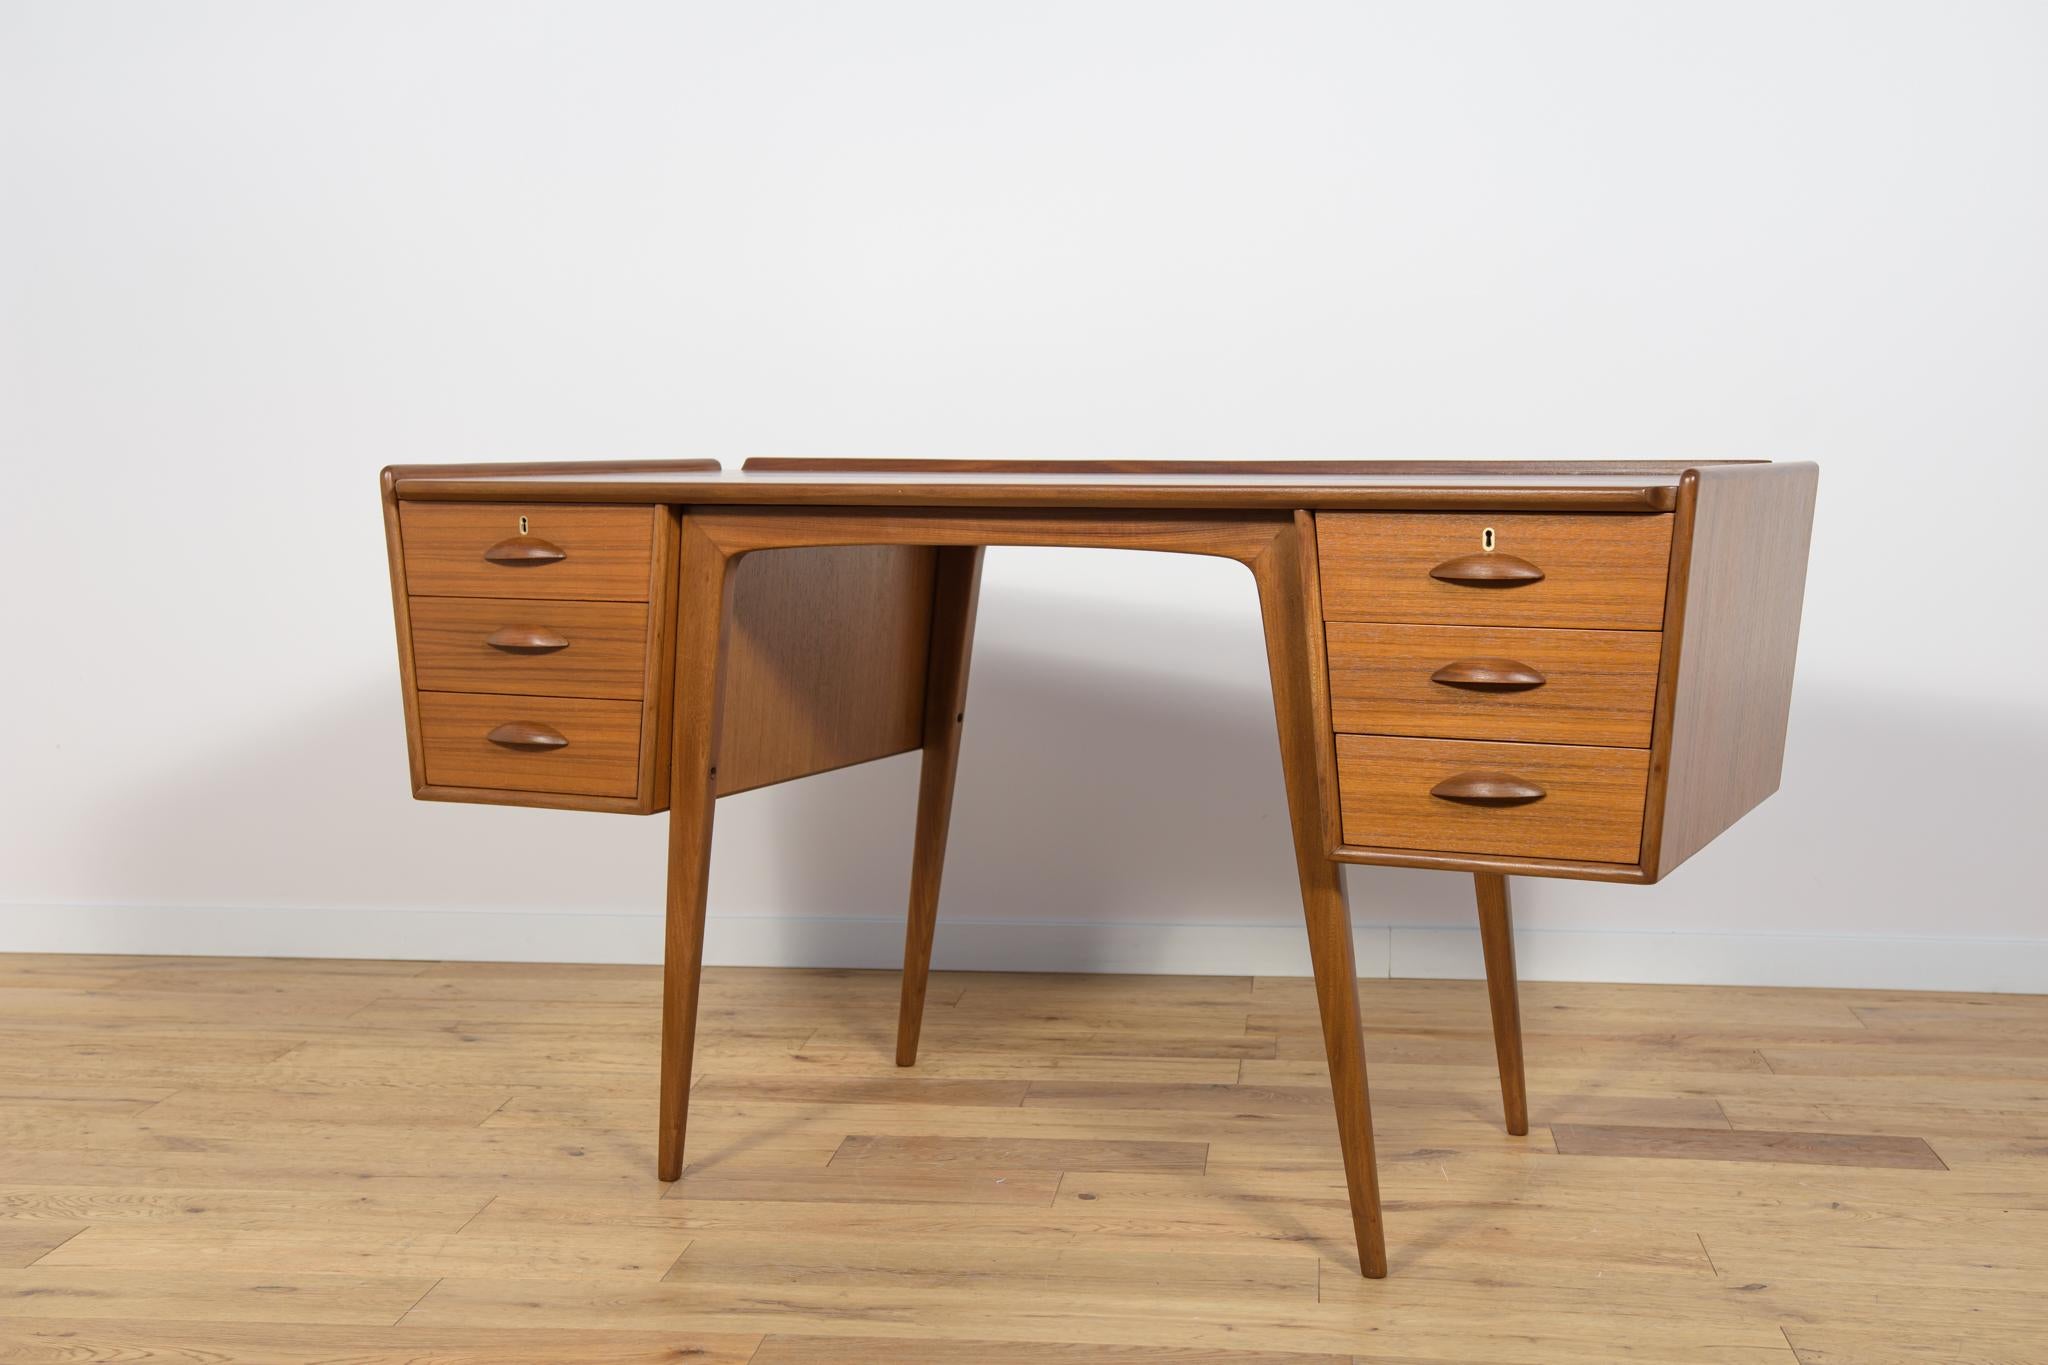 Woodwork Mid-Century Teak Desk by Svante Skogh for AB Möbelfabriken Balder, Sweden, 1950s For Sale